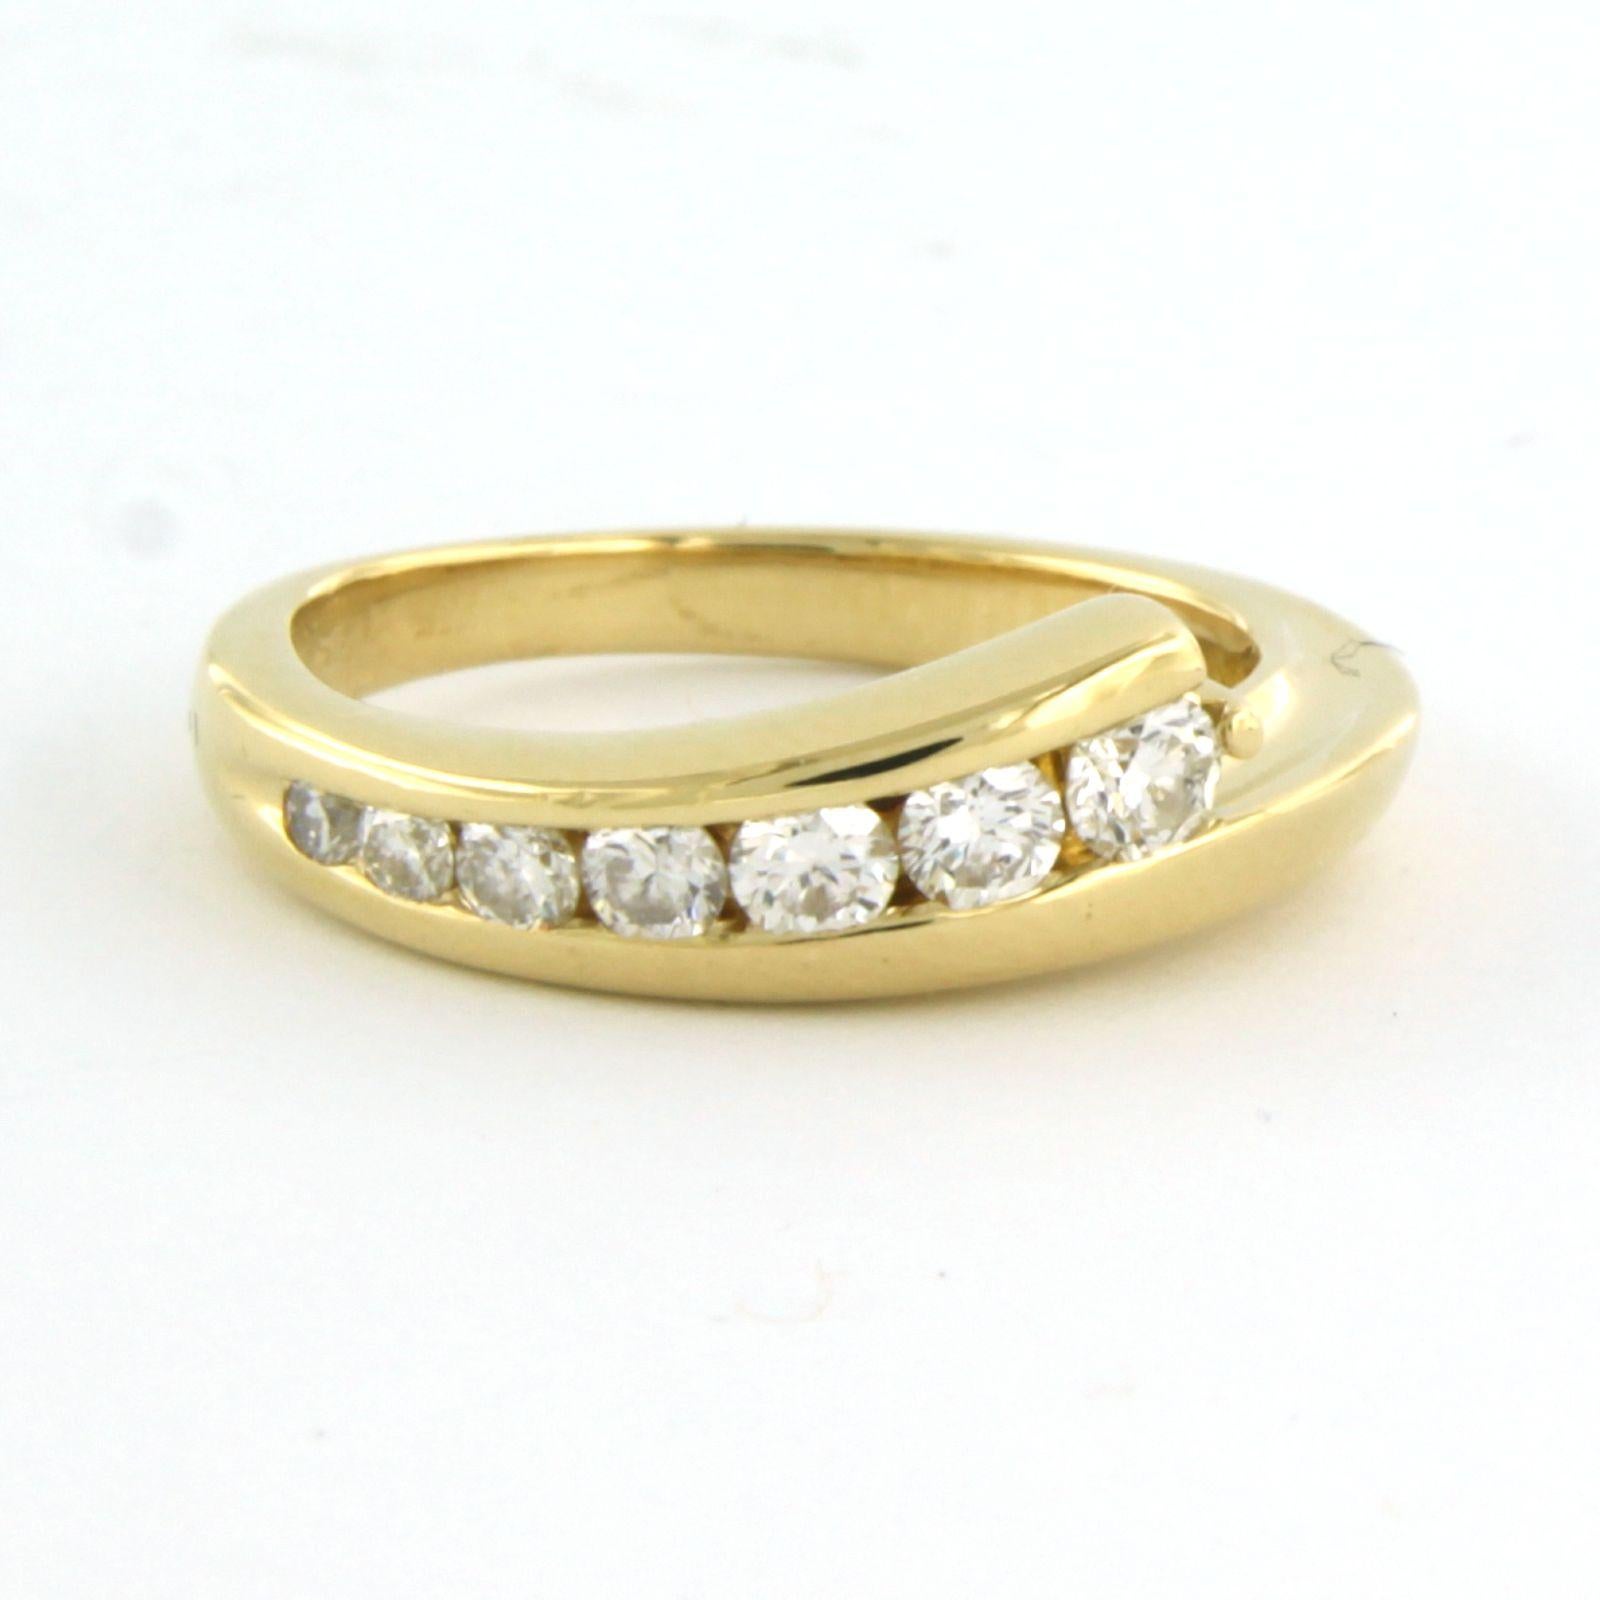 Bague en or jaune 18 kt sertie de diamants de taille brillant. 0.50 ct - F/G - VS/SI - taille U.S. 6 - EU. 16.5(52)

description détaillée :

le haut de l'anneau a une largeur de 6.5 mm

Taille de l'anneau : U.S. 6 - EU. 16.5(52), la bague peut être